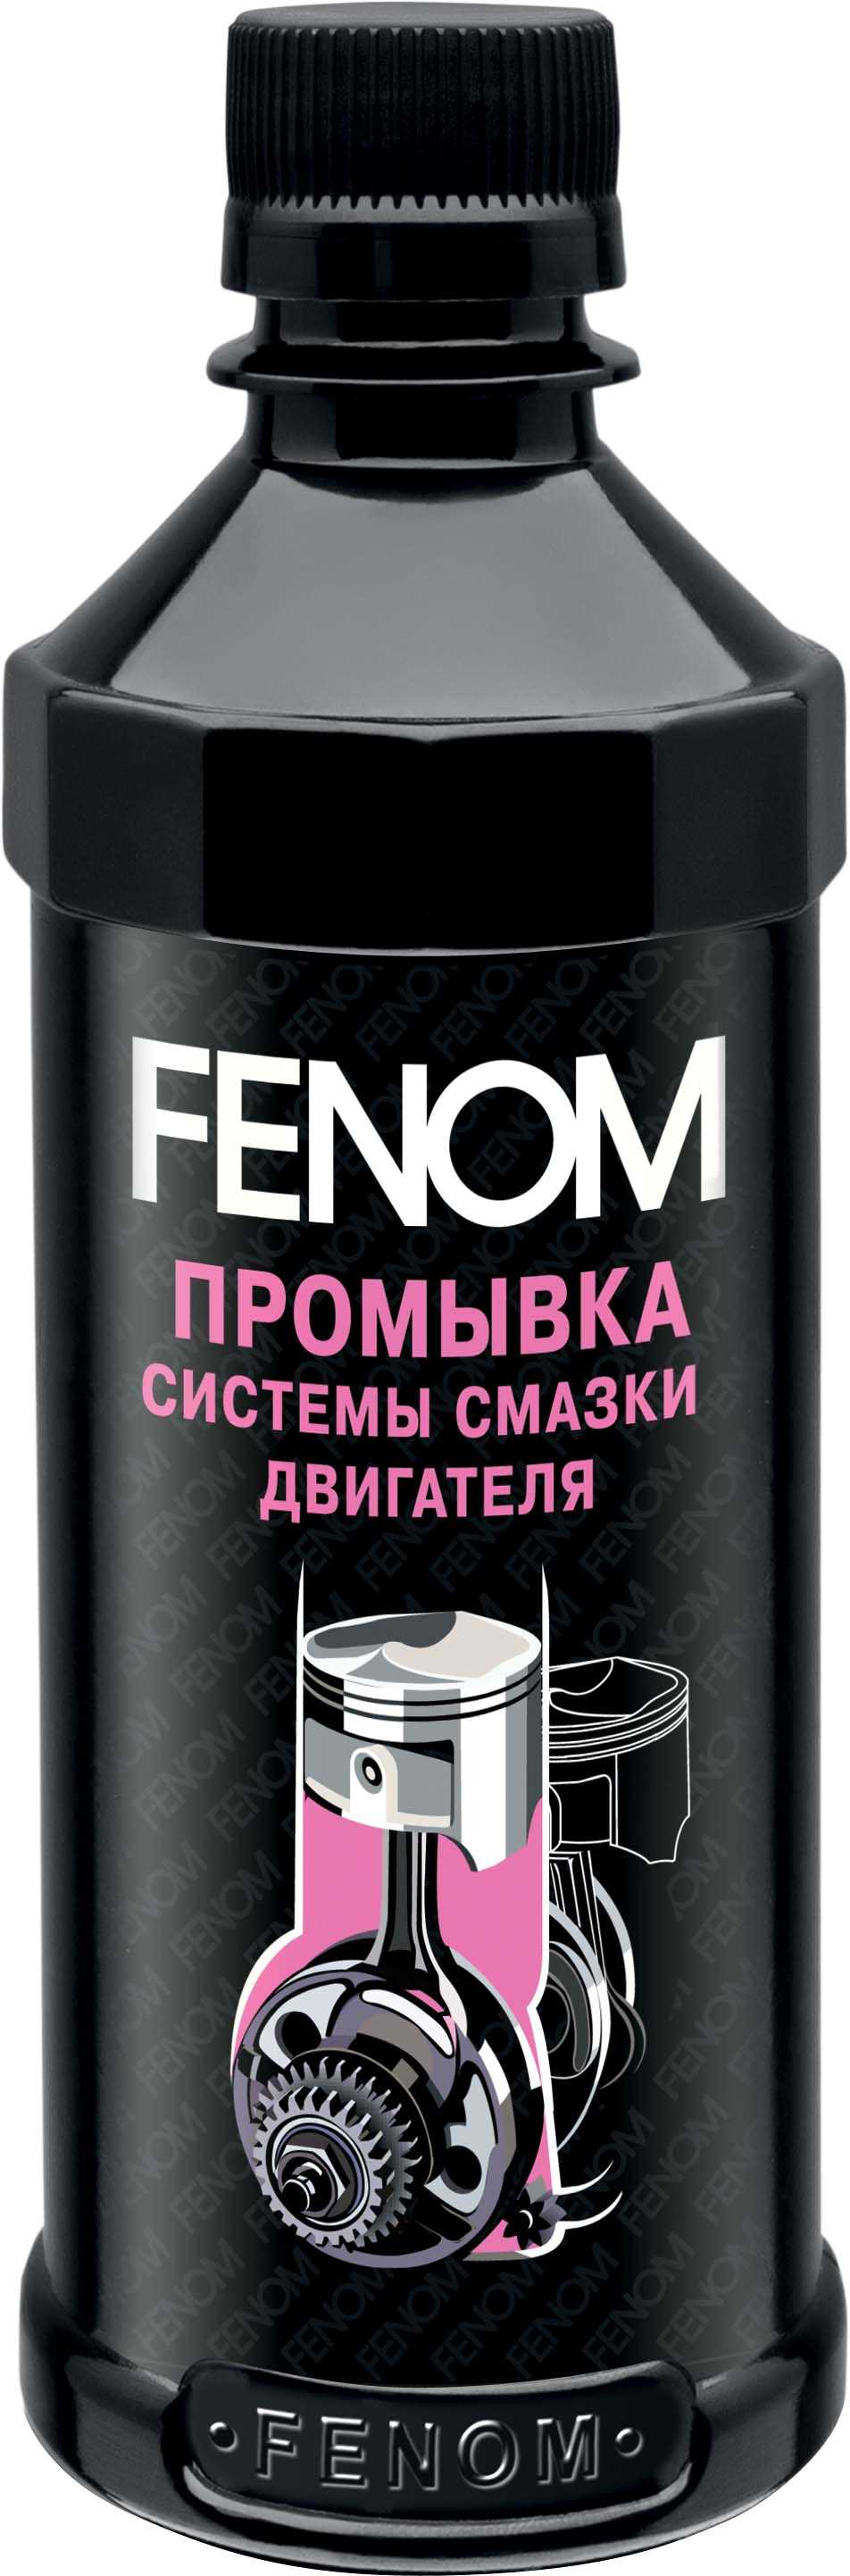 Очистители масляной системы Fenom FN1229